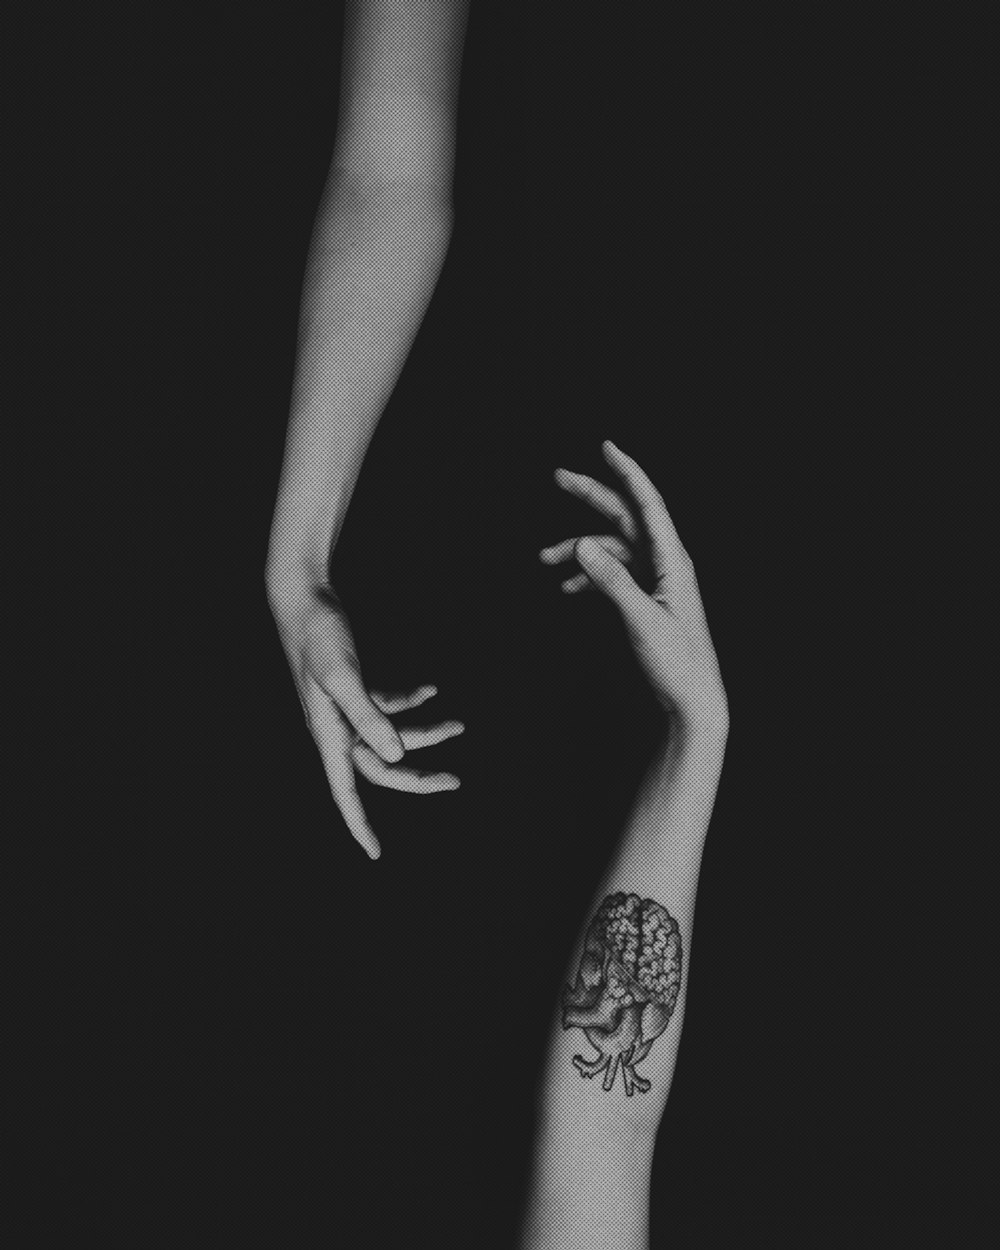 Der Arm einer Frau mit einem Tattoo darauf